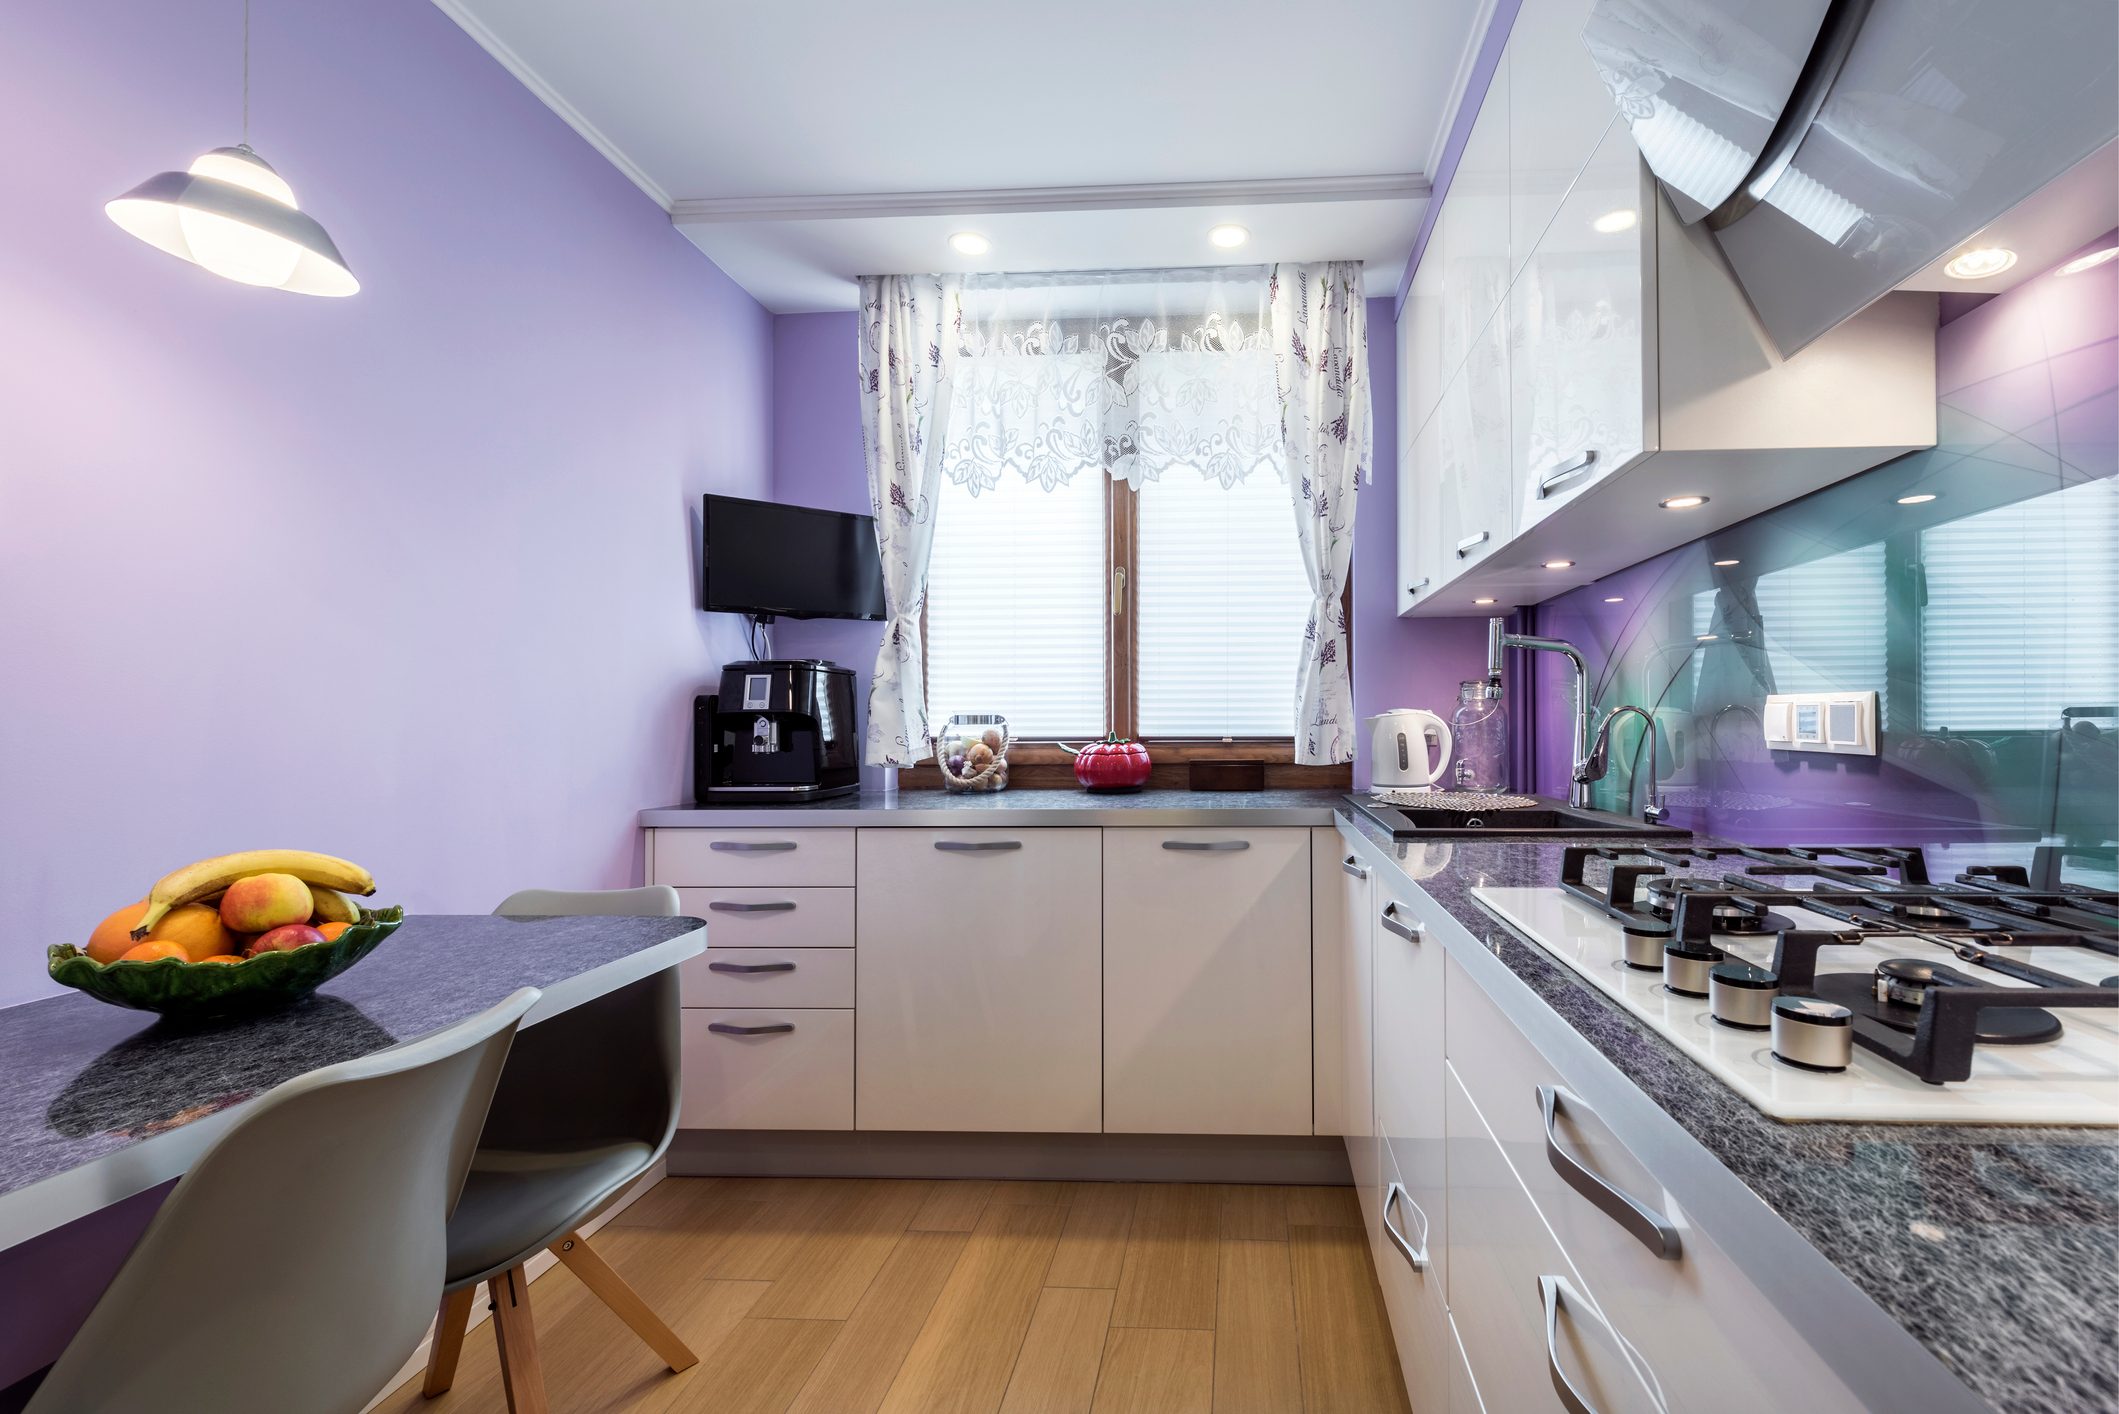 Modern kitchen with lavender walls